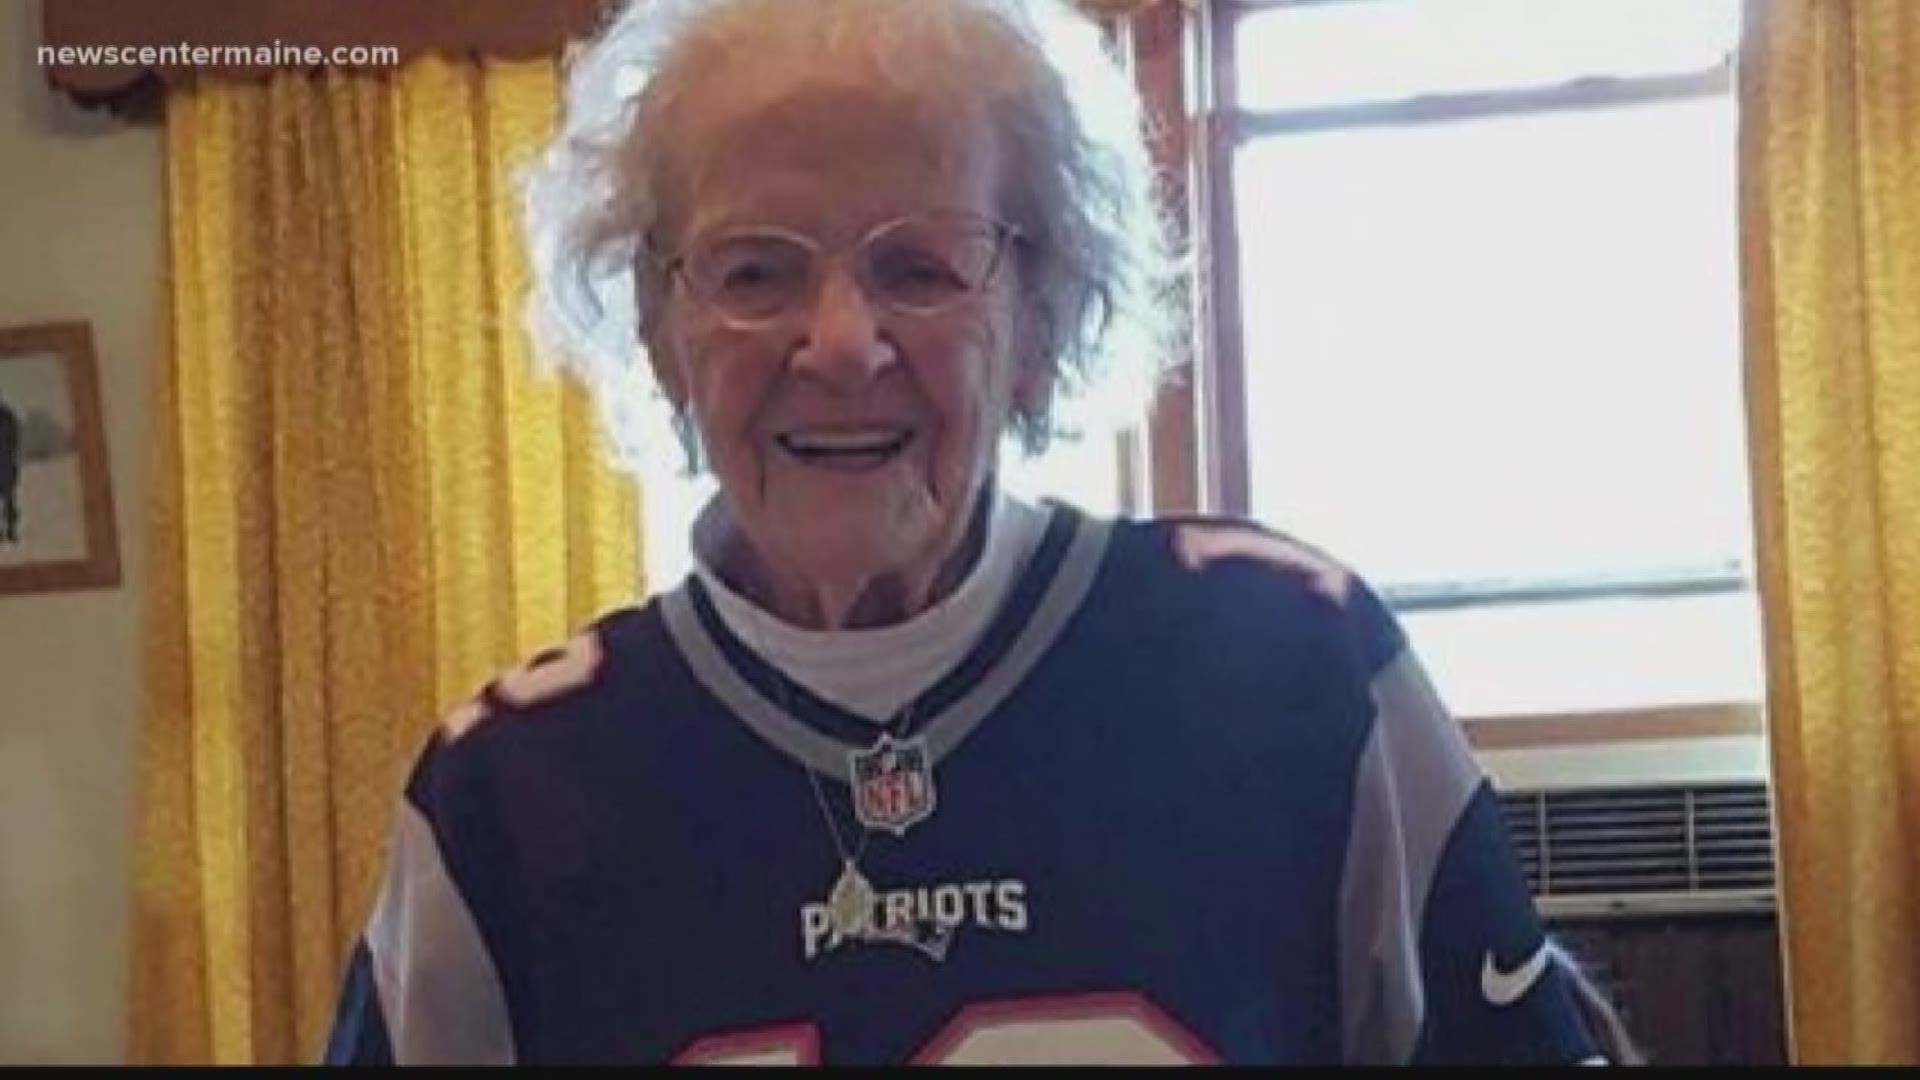 104 year old Pats fan